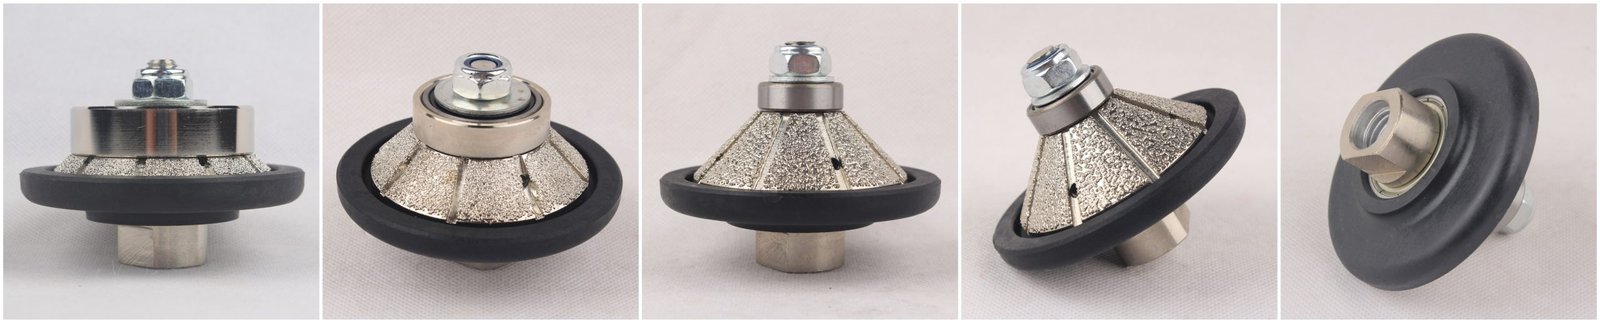 Vacuum Brazed Hand Profiler Wheel Bevel 5-20 mm Diamond Profile Grinding Wheel For Angle Grinder On Granite/Marble